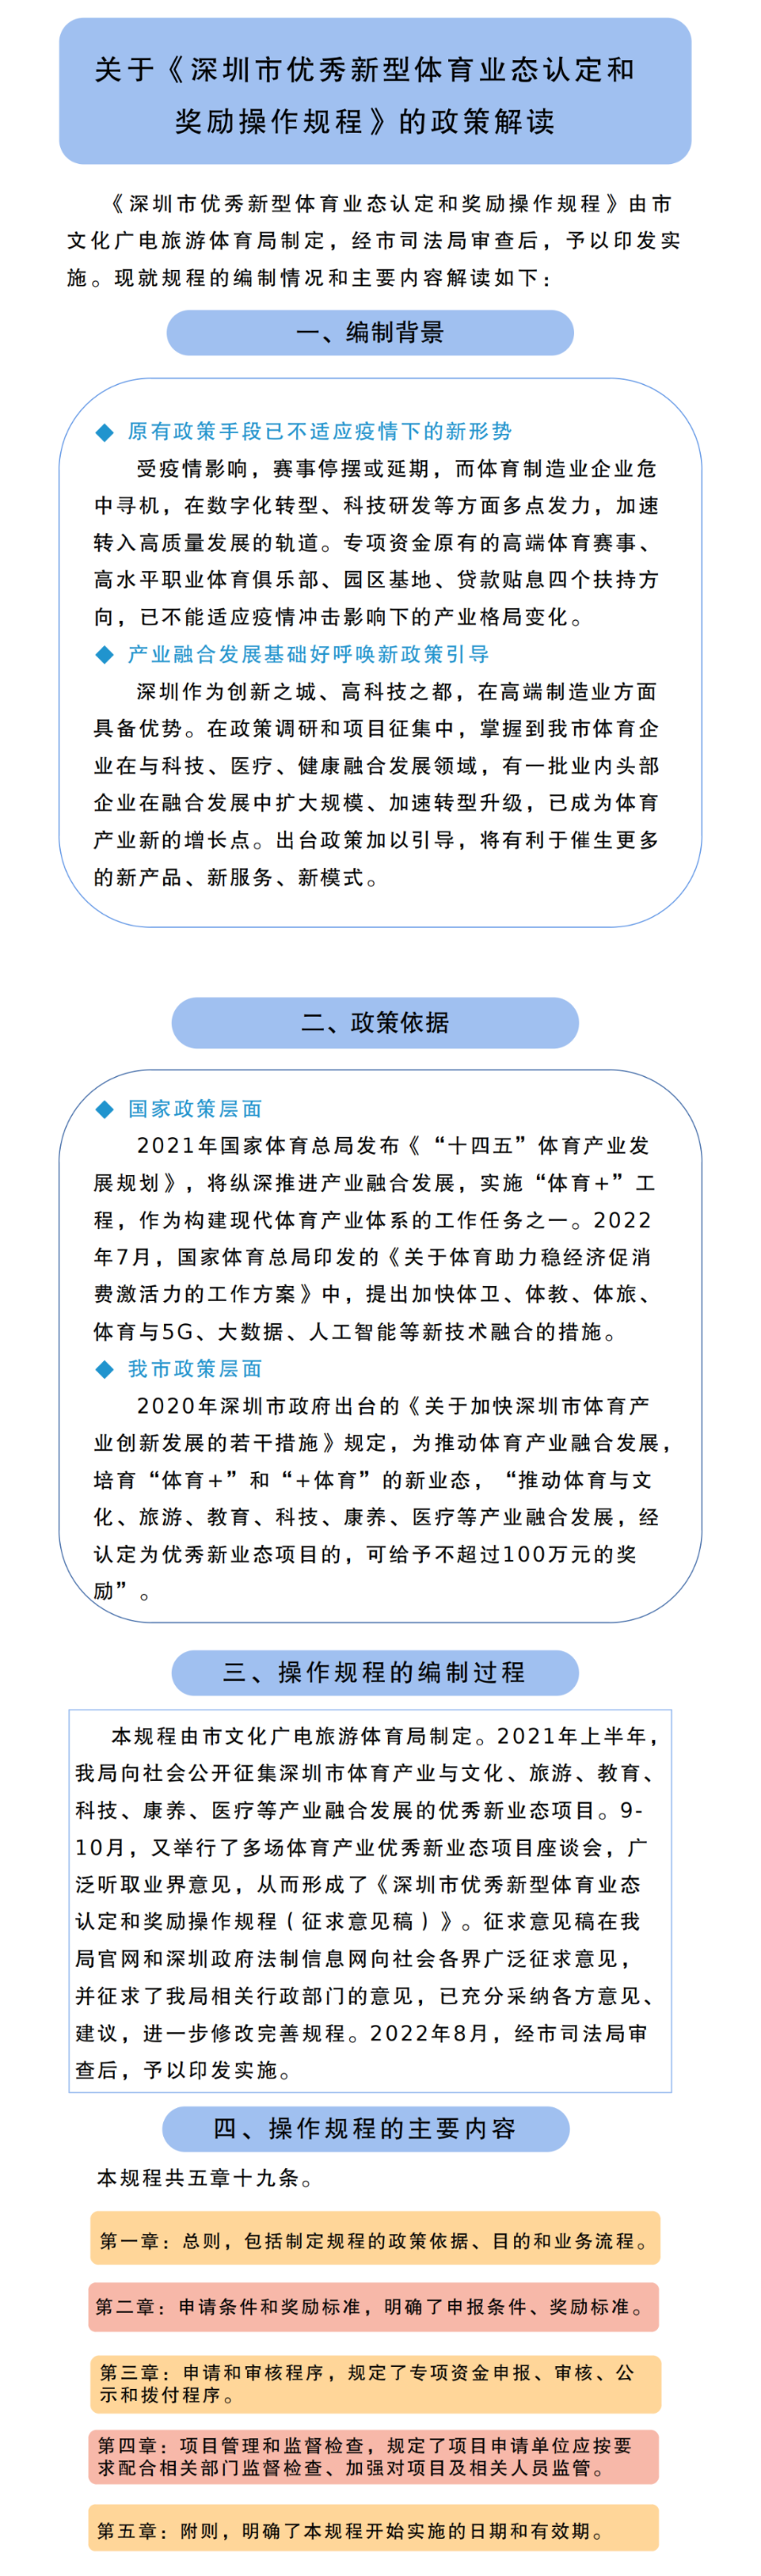 關于《深圳市優秀新型體育業態認定和獎勵操作規程》的政策解讀